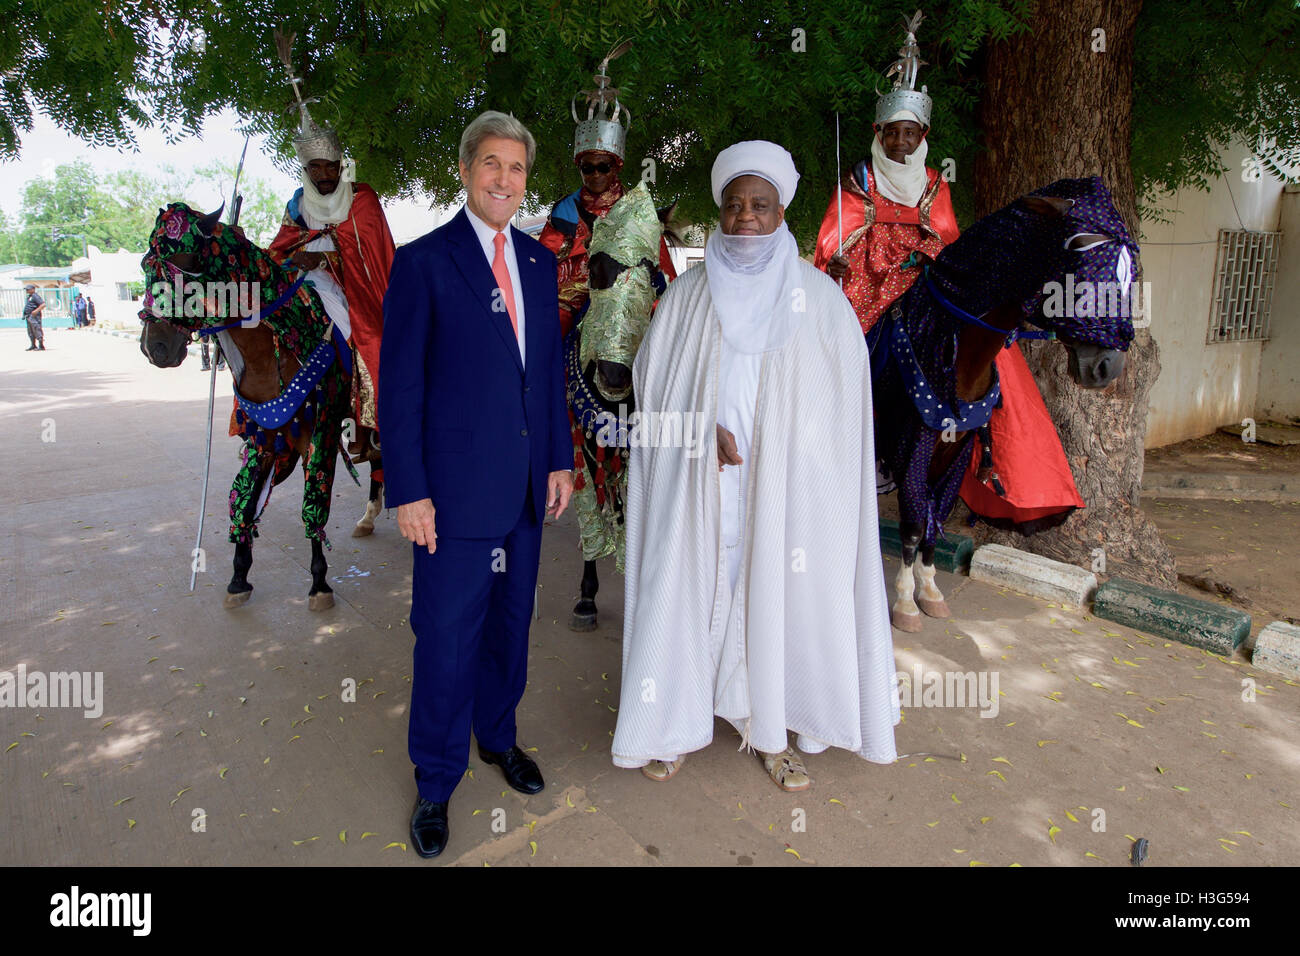 Stati Uniti Il segretario di Stato John Kerry, uniti da Sultan Muhammadu Sa'ad Abubakar, posa per una foto di fronte alcuni dei Sultan's Parade cavalli dopo l'erogazione di un discorso sulla lotta contro l'estremismo violento e promuovere la buona governance a seguito di una riunione con i funzionari del governo e i leader religiosi presso il Palazzo del Sultano di Sokoto in Nigeria il 23 agosto 2016. Foto Stock